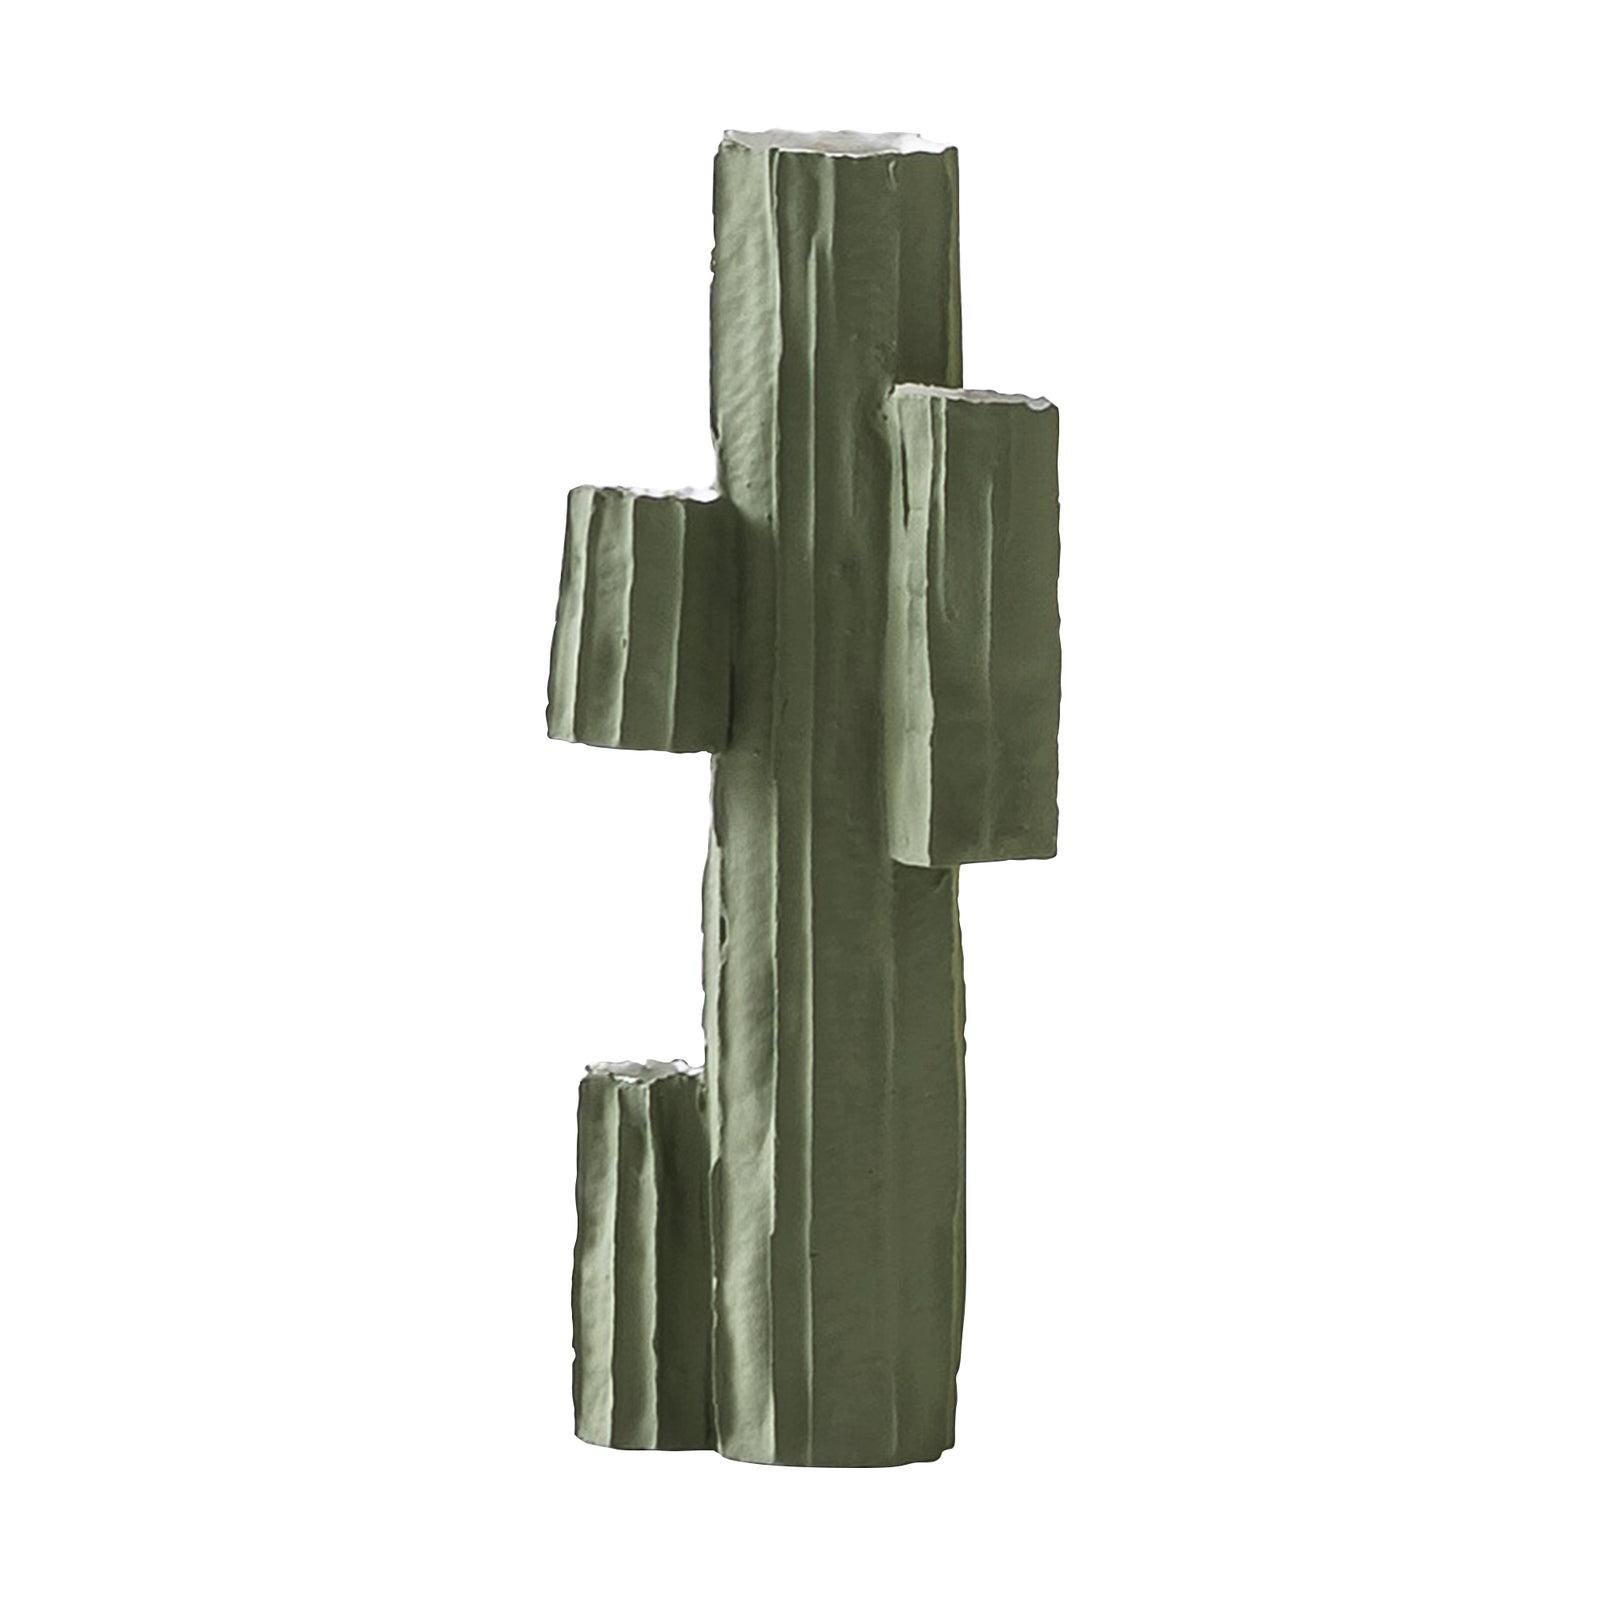 Contemporary Ceramic Cactus Vase #1 Farbig